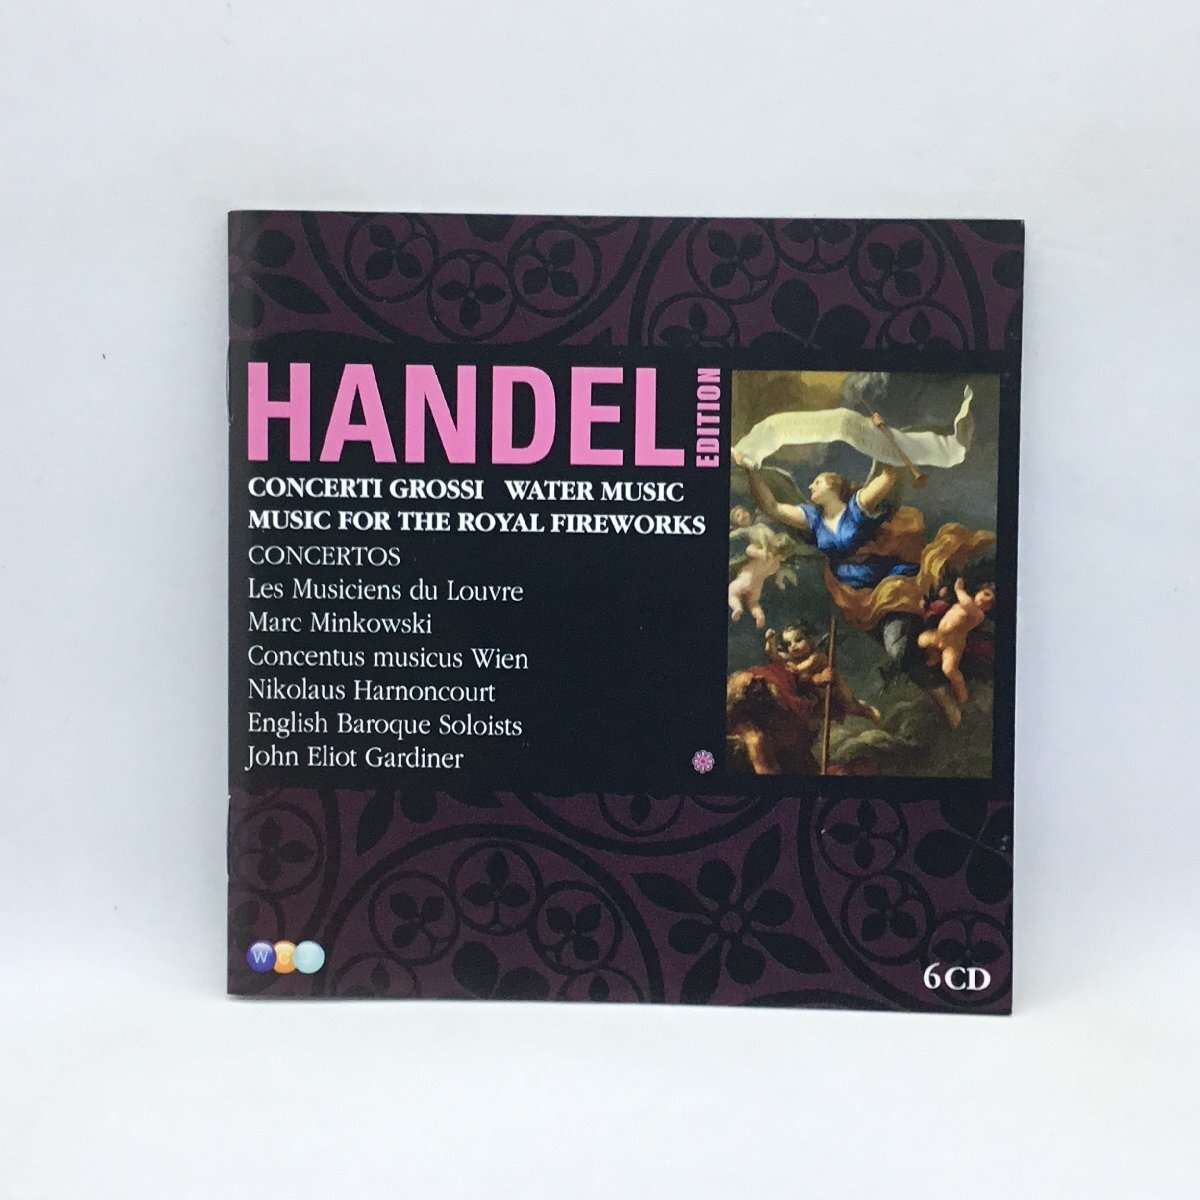 ヘンデル/HANDEL EDITION - CONCERTI GROSSI, WATER MUSIC, MUSIC FOR THE ROYAL FIRE WORKS 〇6CD 2564 69551-7の画像4